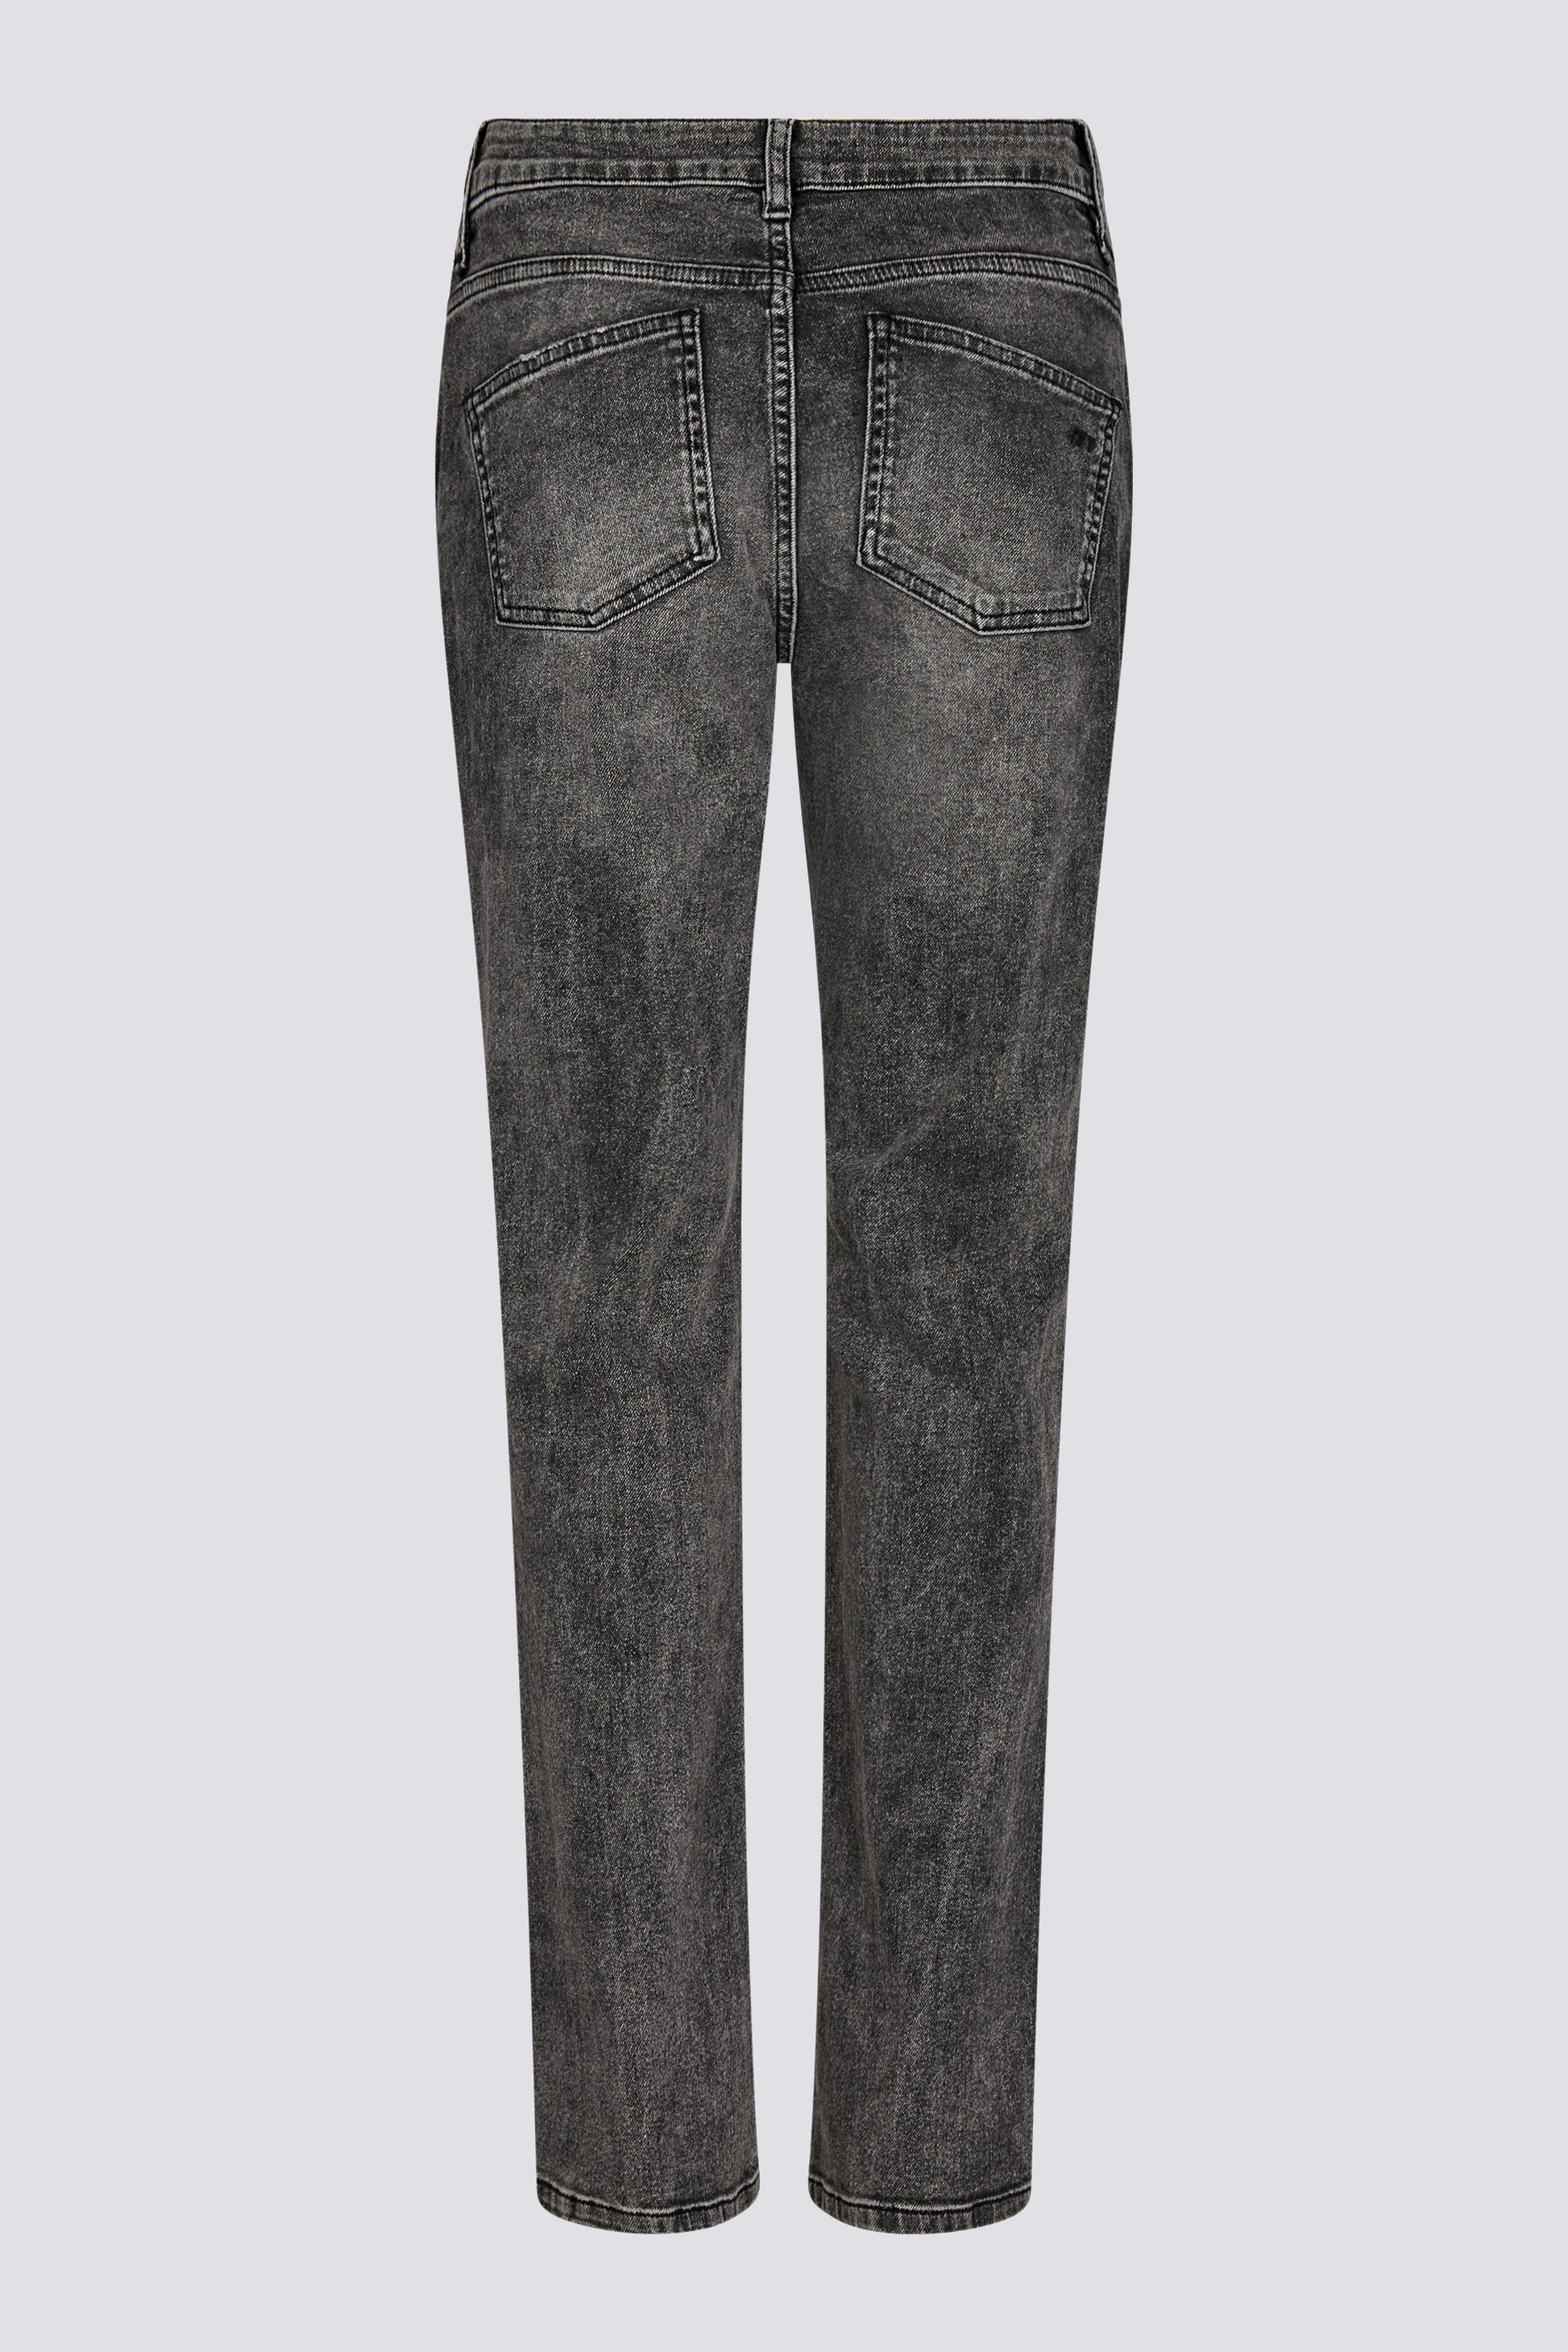 IVY Copenhagen IVY-Lulu Jeans Wash Rockstar Grey Jeans & Pants 8 Grey